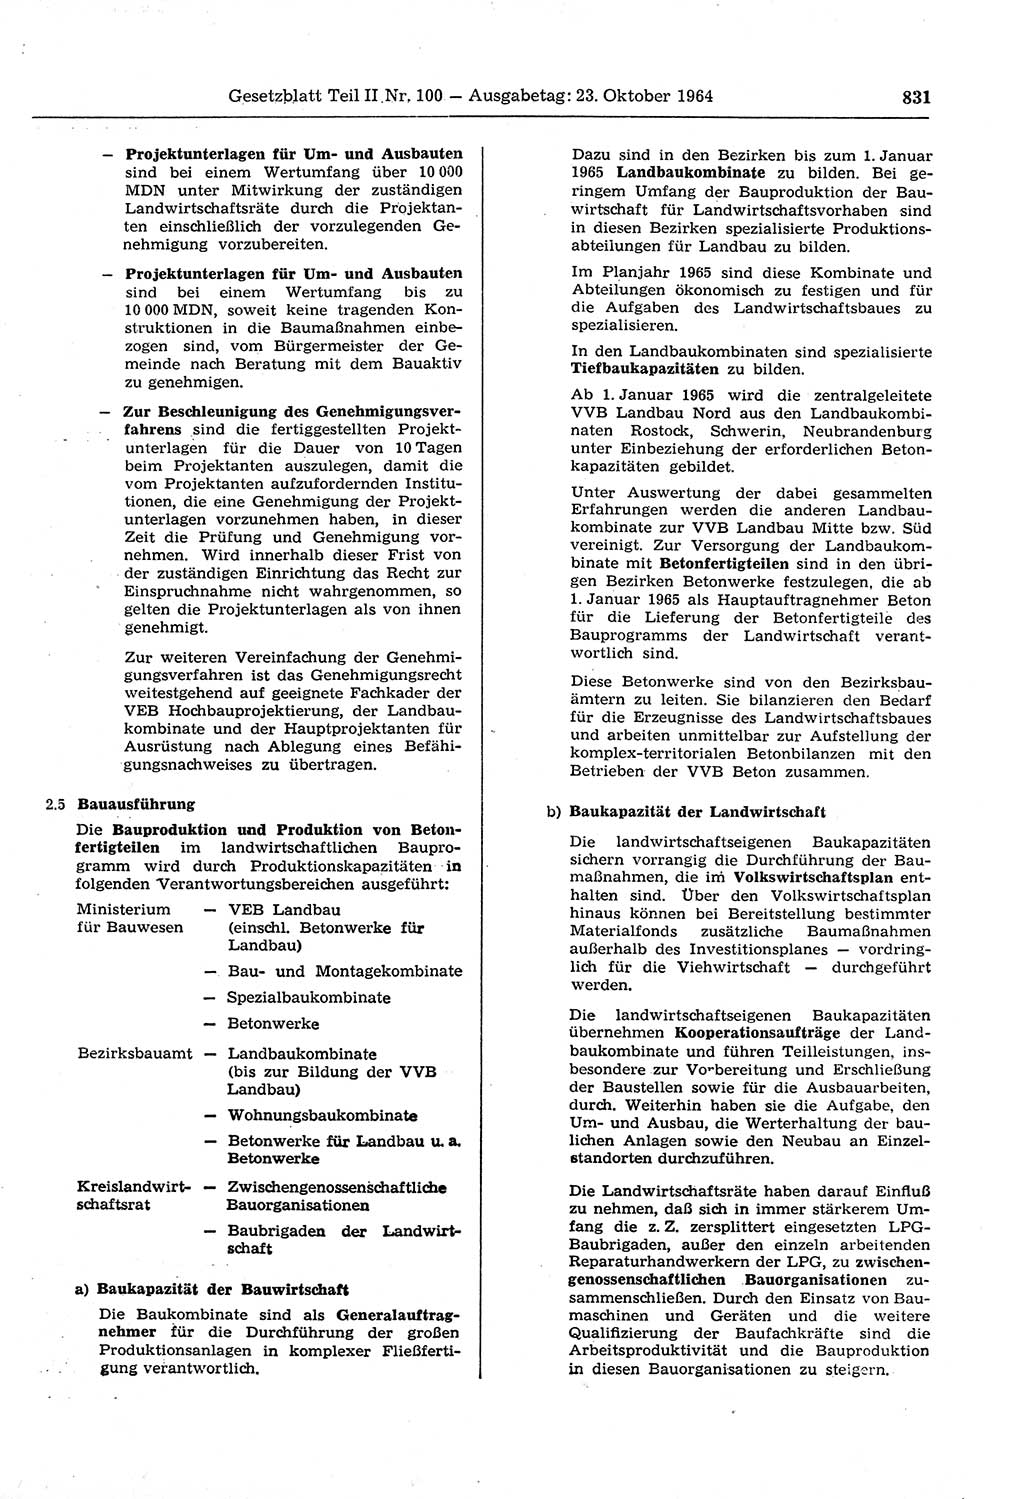 Gesetzblatt (GBl.) der Deutschen Demokratischen Republik (DDR) Teil ⅠⅠ 1964, Seite 831 (GBl. DDR ⅠⅠ 1964, S. 831)